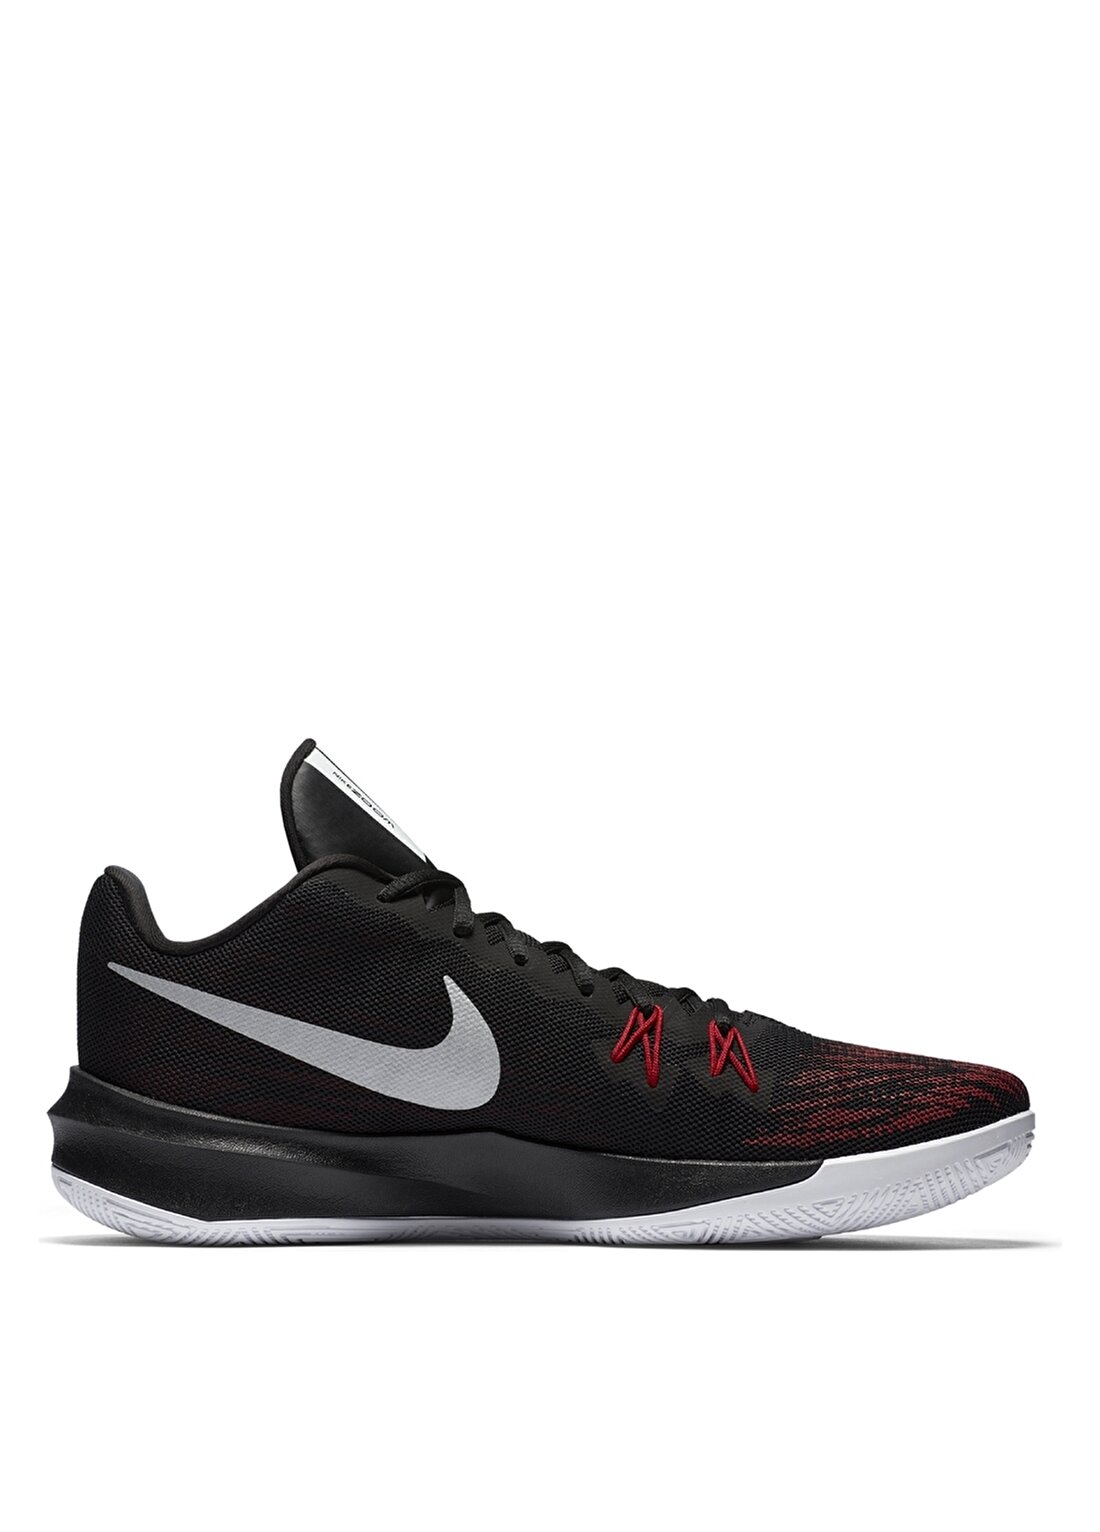 Nike Zoom Evidence II Basketbol Ayakkabısı